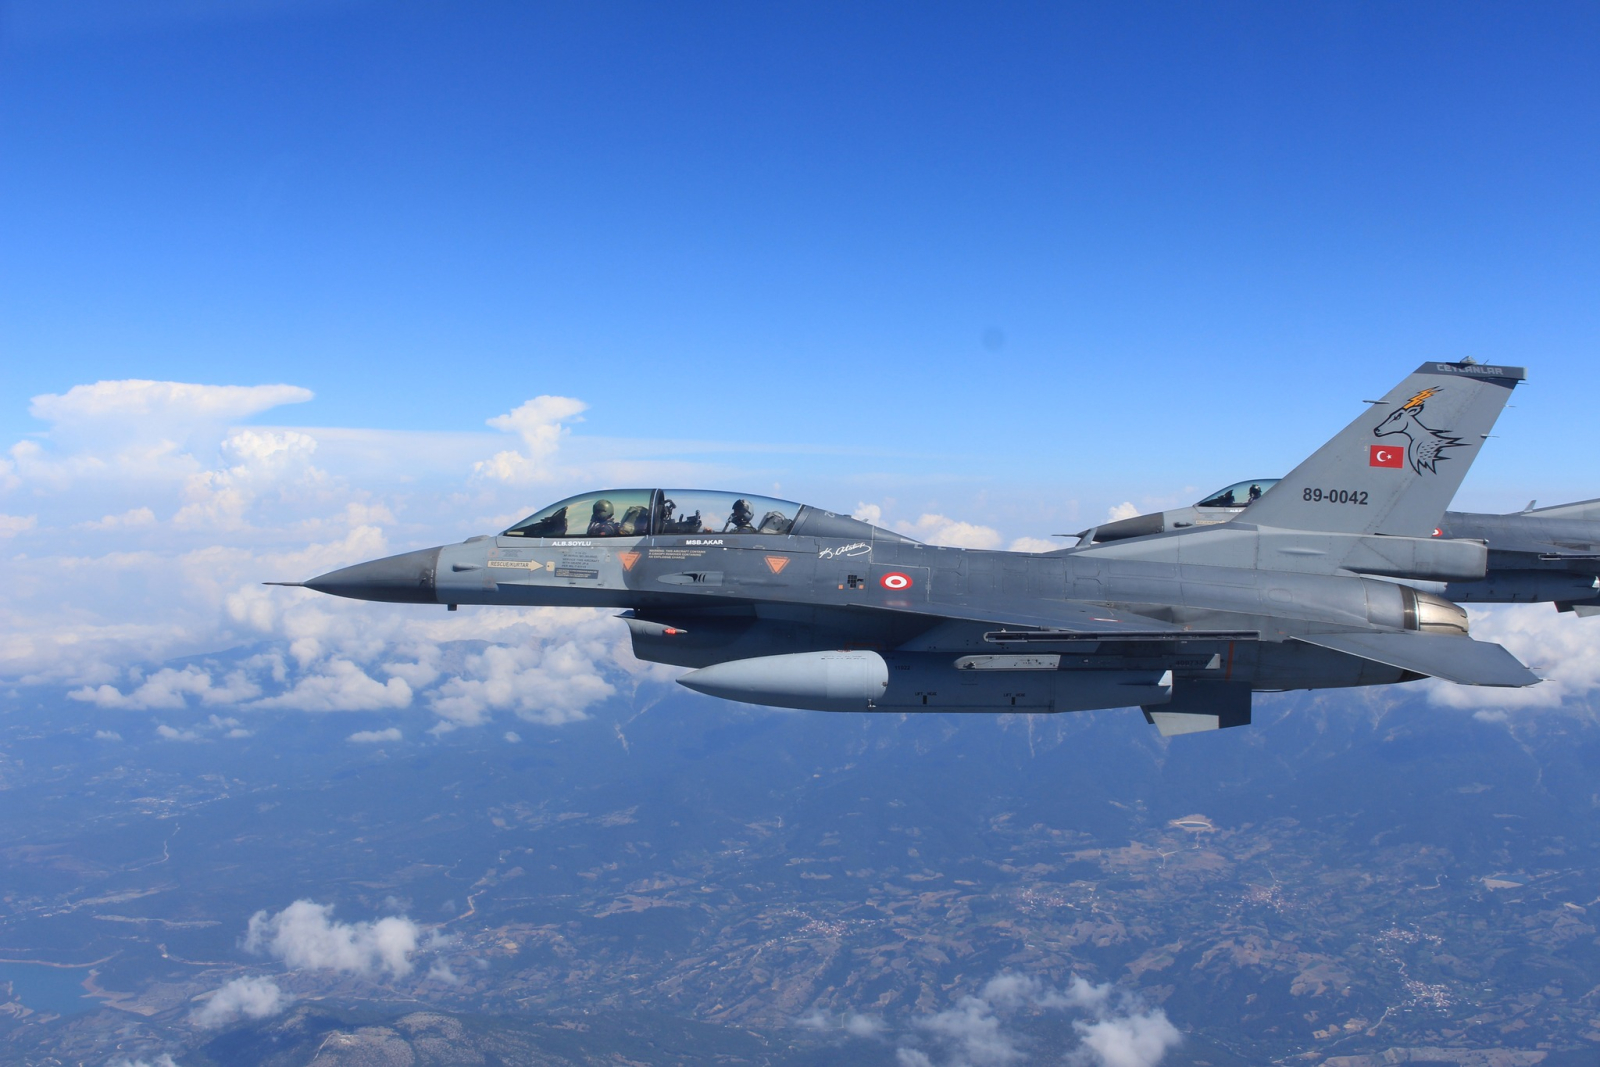 Οι επιλογές της Τουρκίας εάν οι ΗΠΑ απαγορεύσουν επίσης τα F-16 είναι ζοφερές.  Γιατί το ρωσικό Su-35 δεν είναι λύση και το Eurofighter προκαλεί προβλήματα στους Τούρκους